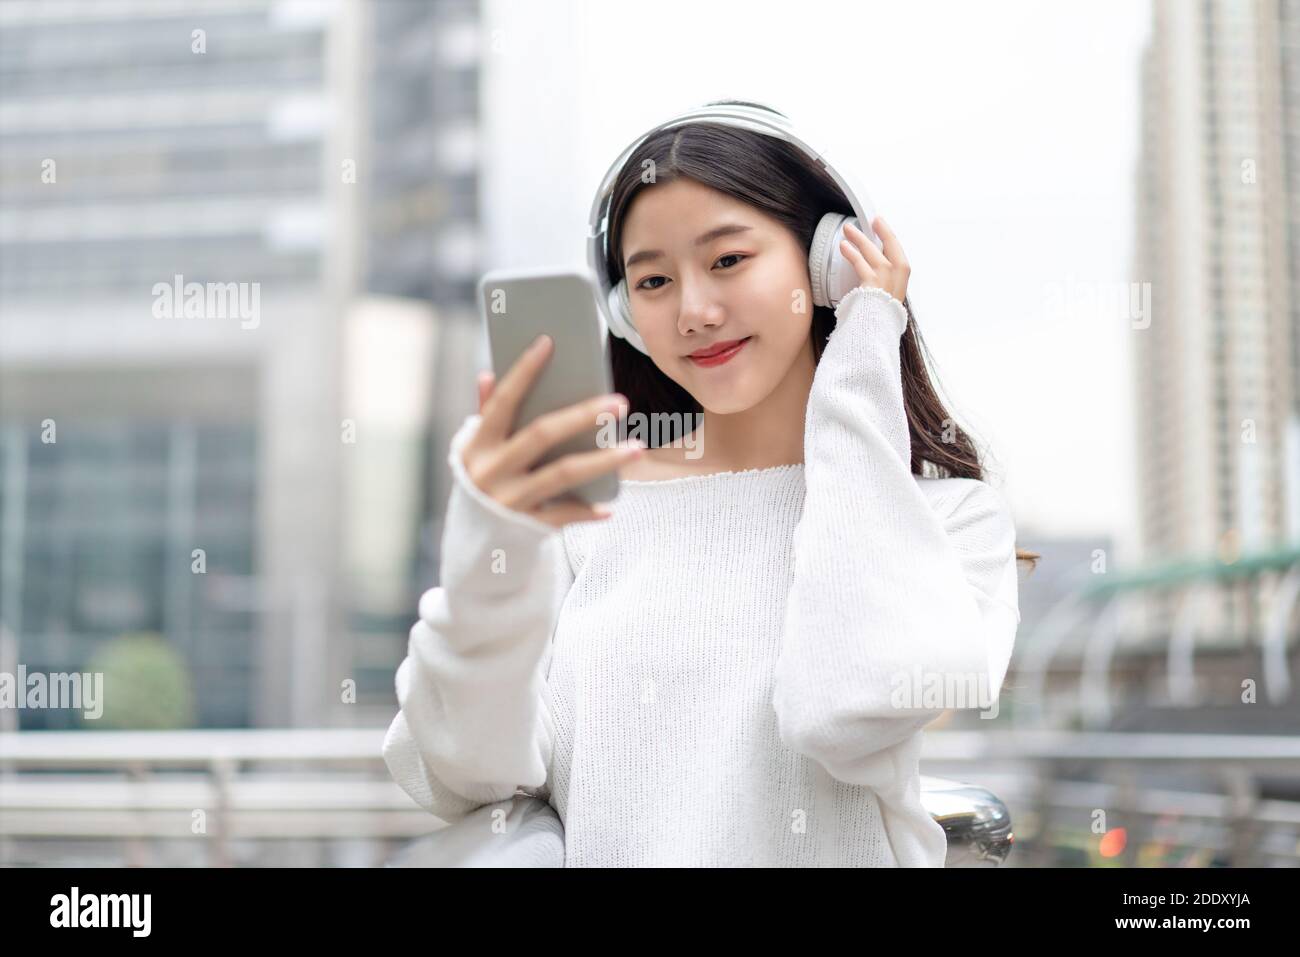 Jeune fille asiatique portant un casque à l'écoute de musique en ligne de téléphone mobile dans l'arrière-plan de l'immeuble de la ville Banque D'Images